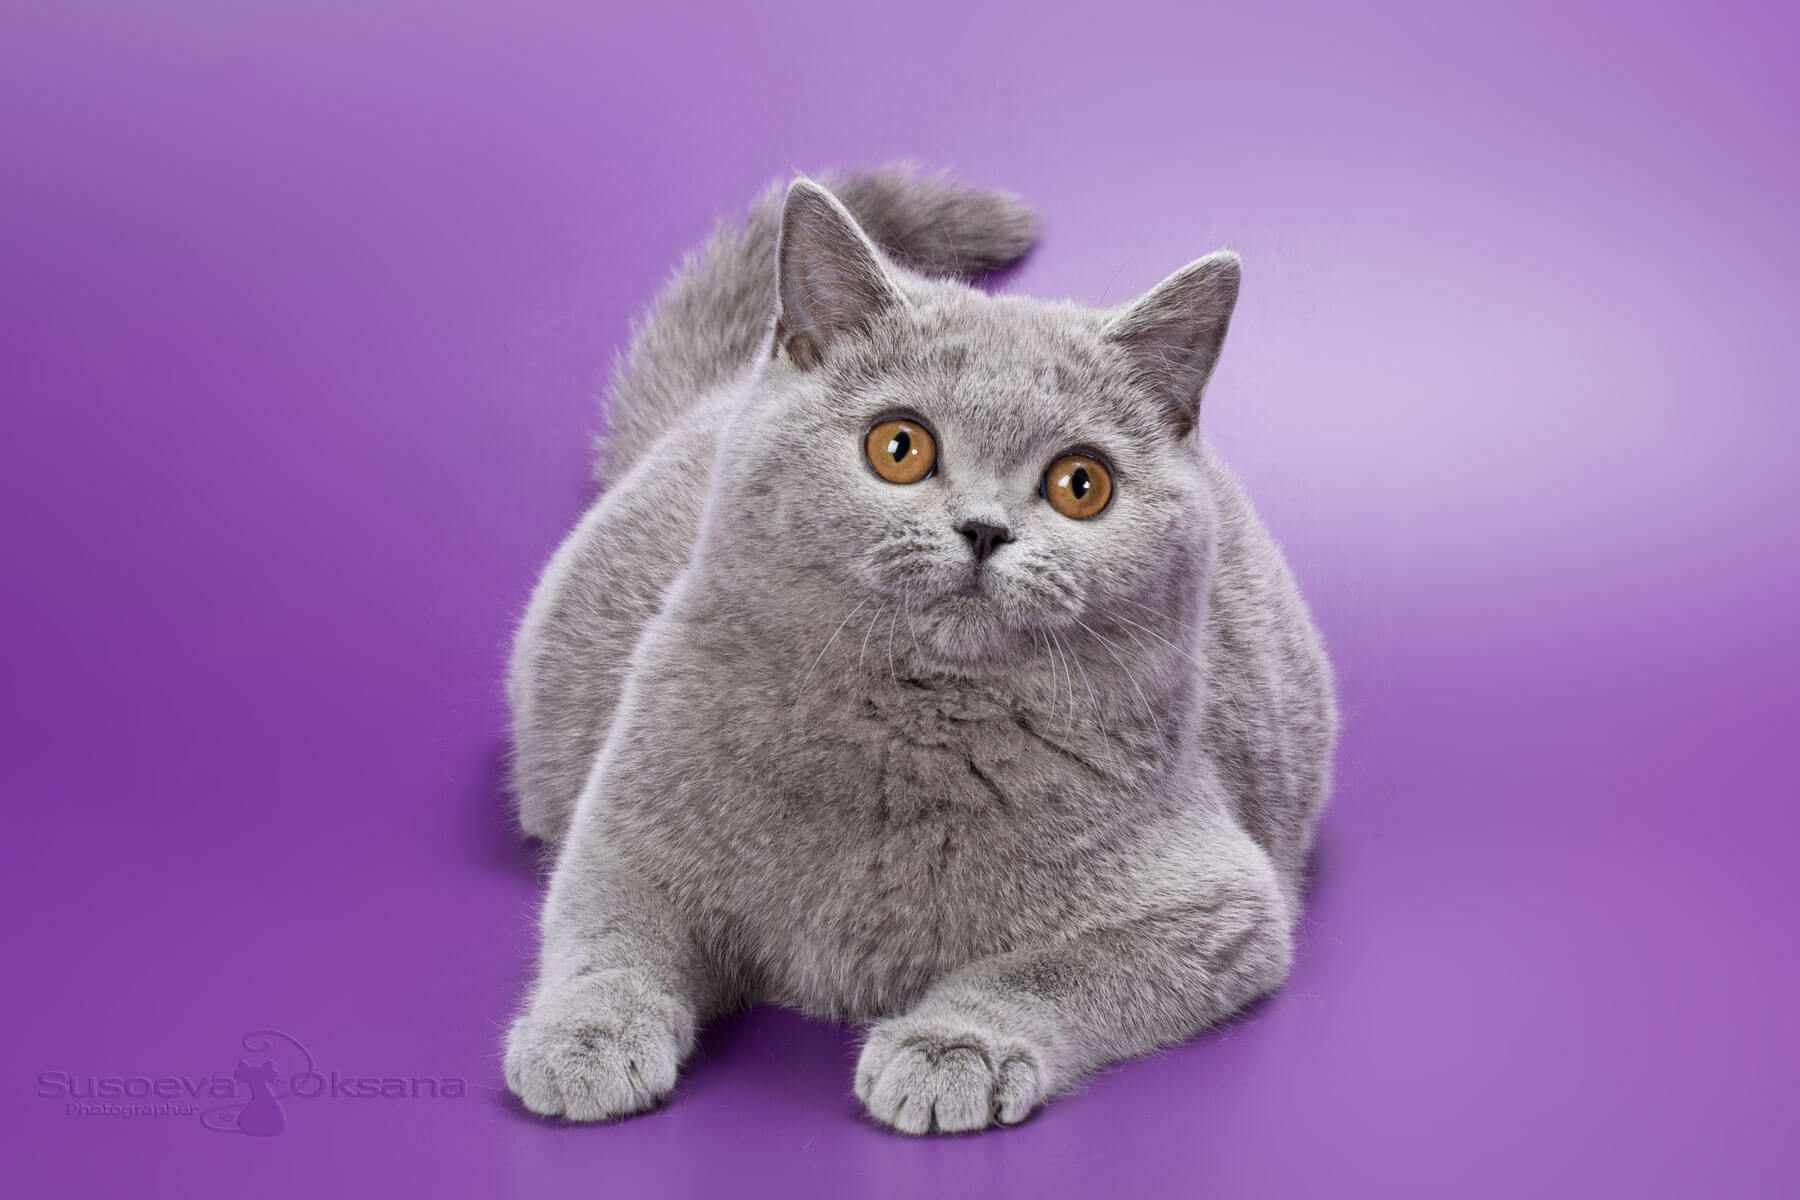 Британская голубая кошка, фото, цена, купить в Минске голубого британского котёнка-кошку Iris